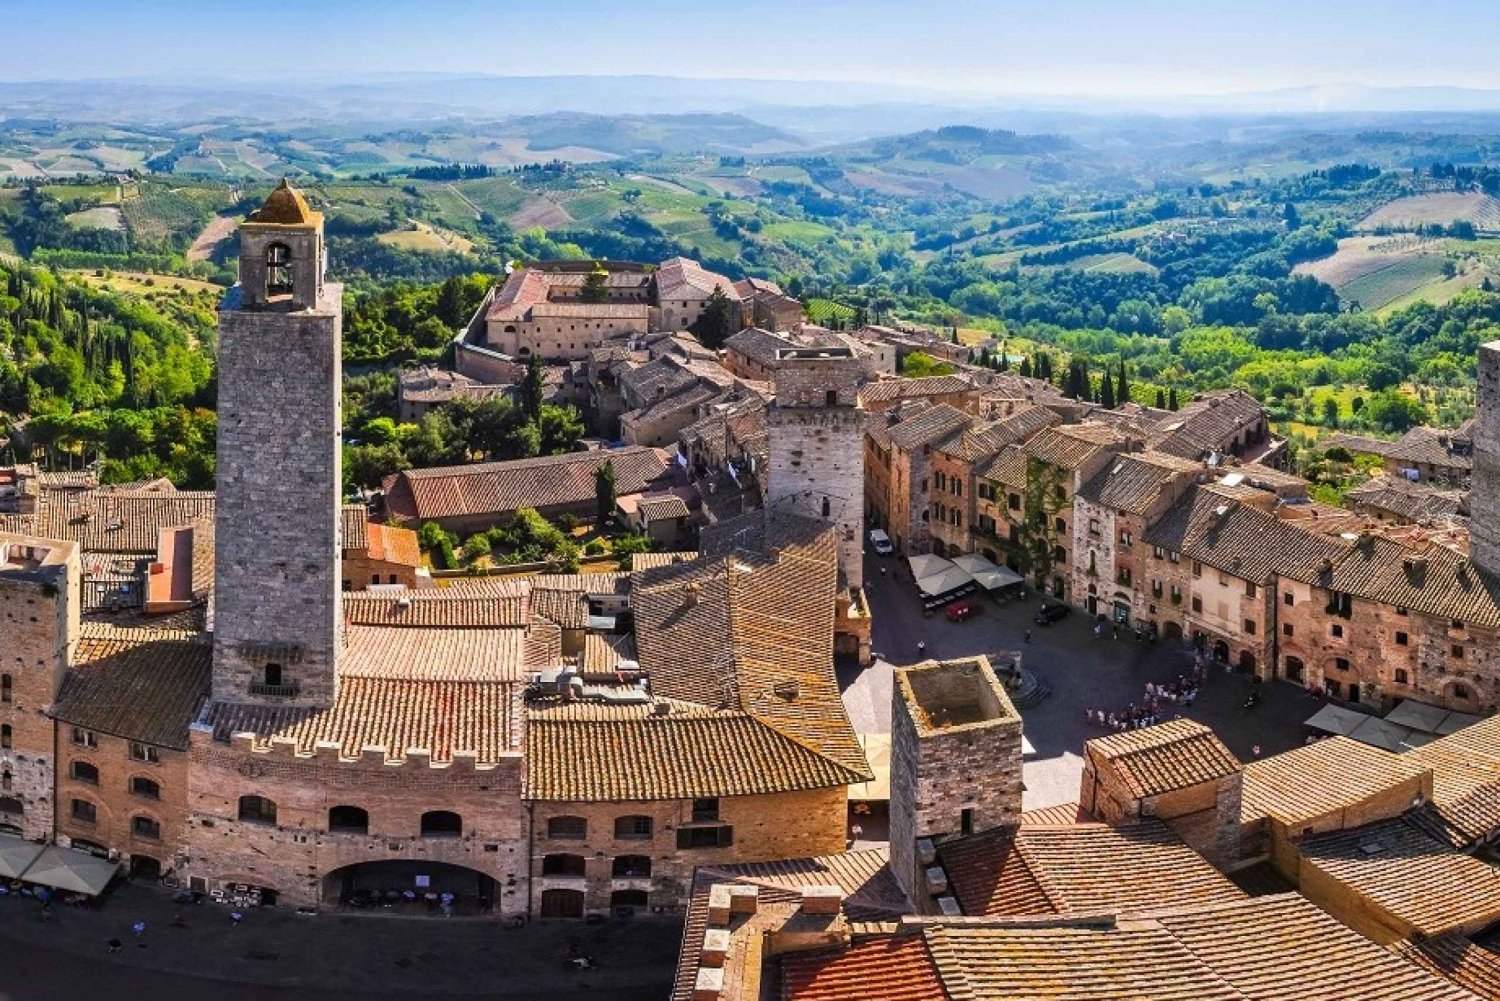 Toscana: Viagem de um dia a Pisa, Siena, San Gimignano e Chianti